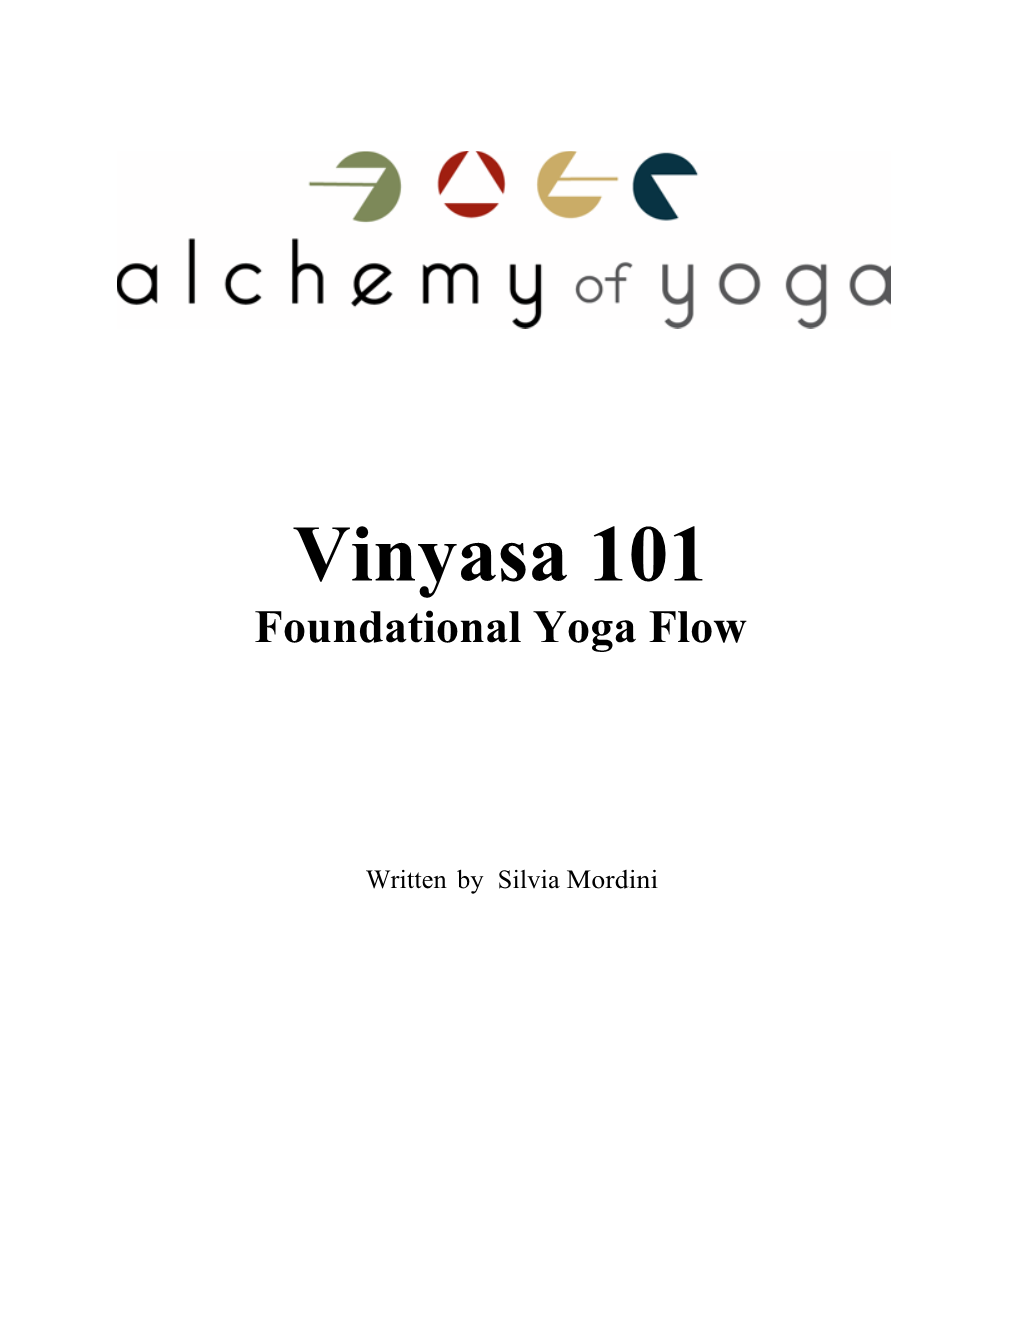 Vinyasa 101 Student Booklet 2017